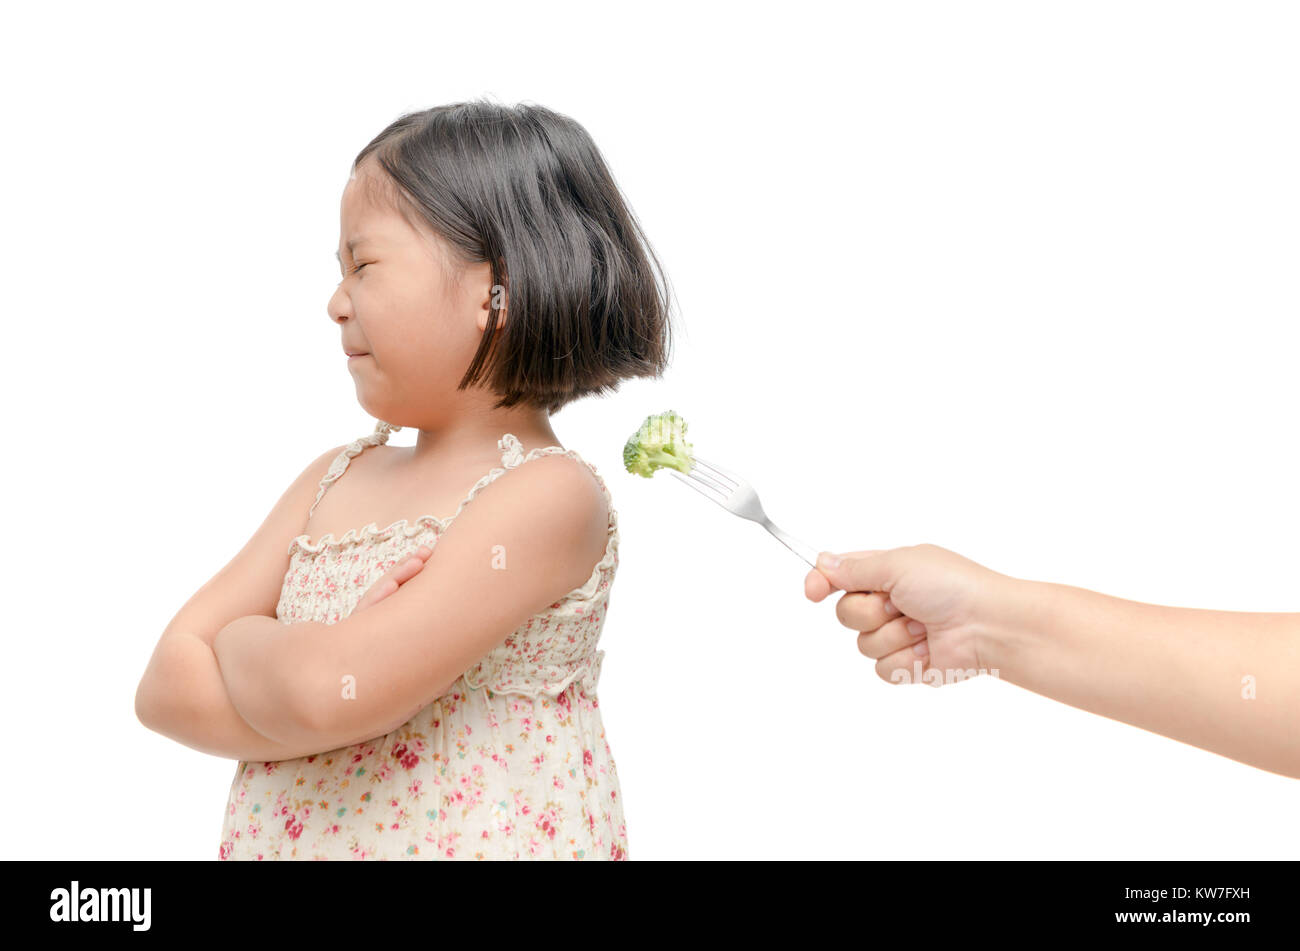 Asiatische kind Mädchen mit Ausdruck der Abneigung gegen Gemüse auf weißem Hintergrund, Ablehnen, essen Konzept Stockfoto